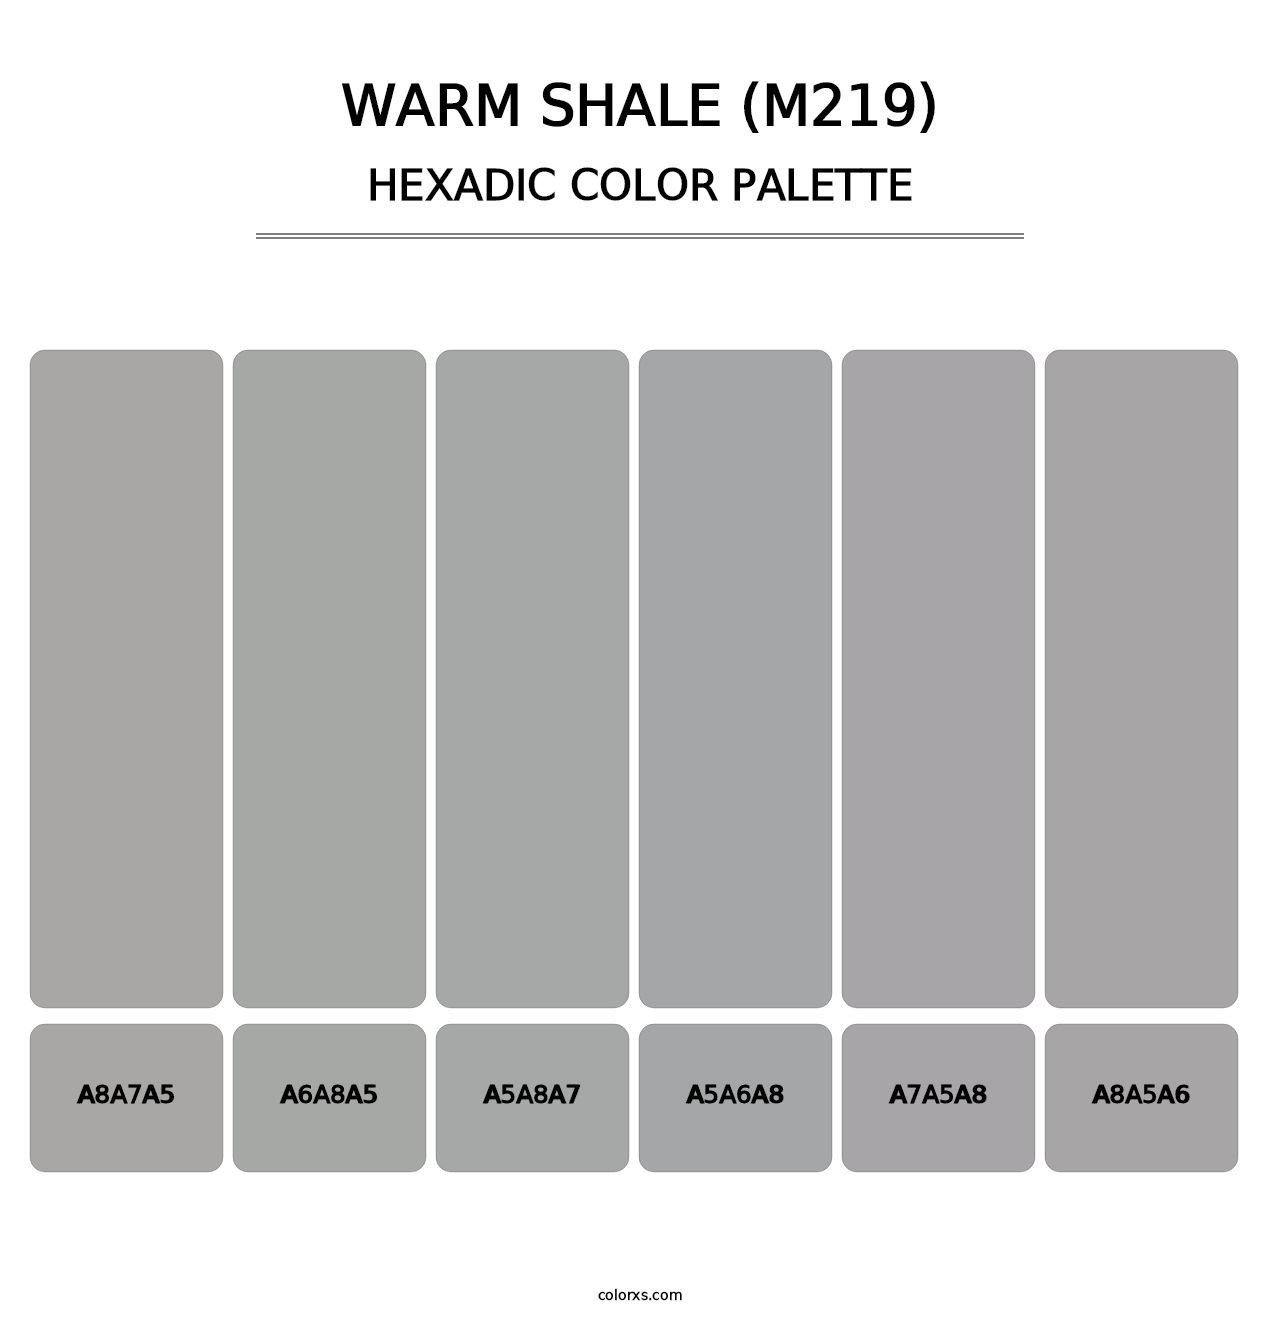 Warm Shale (M219) - Hexadic Color Palette